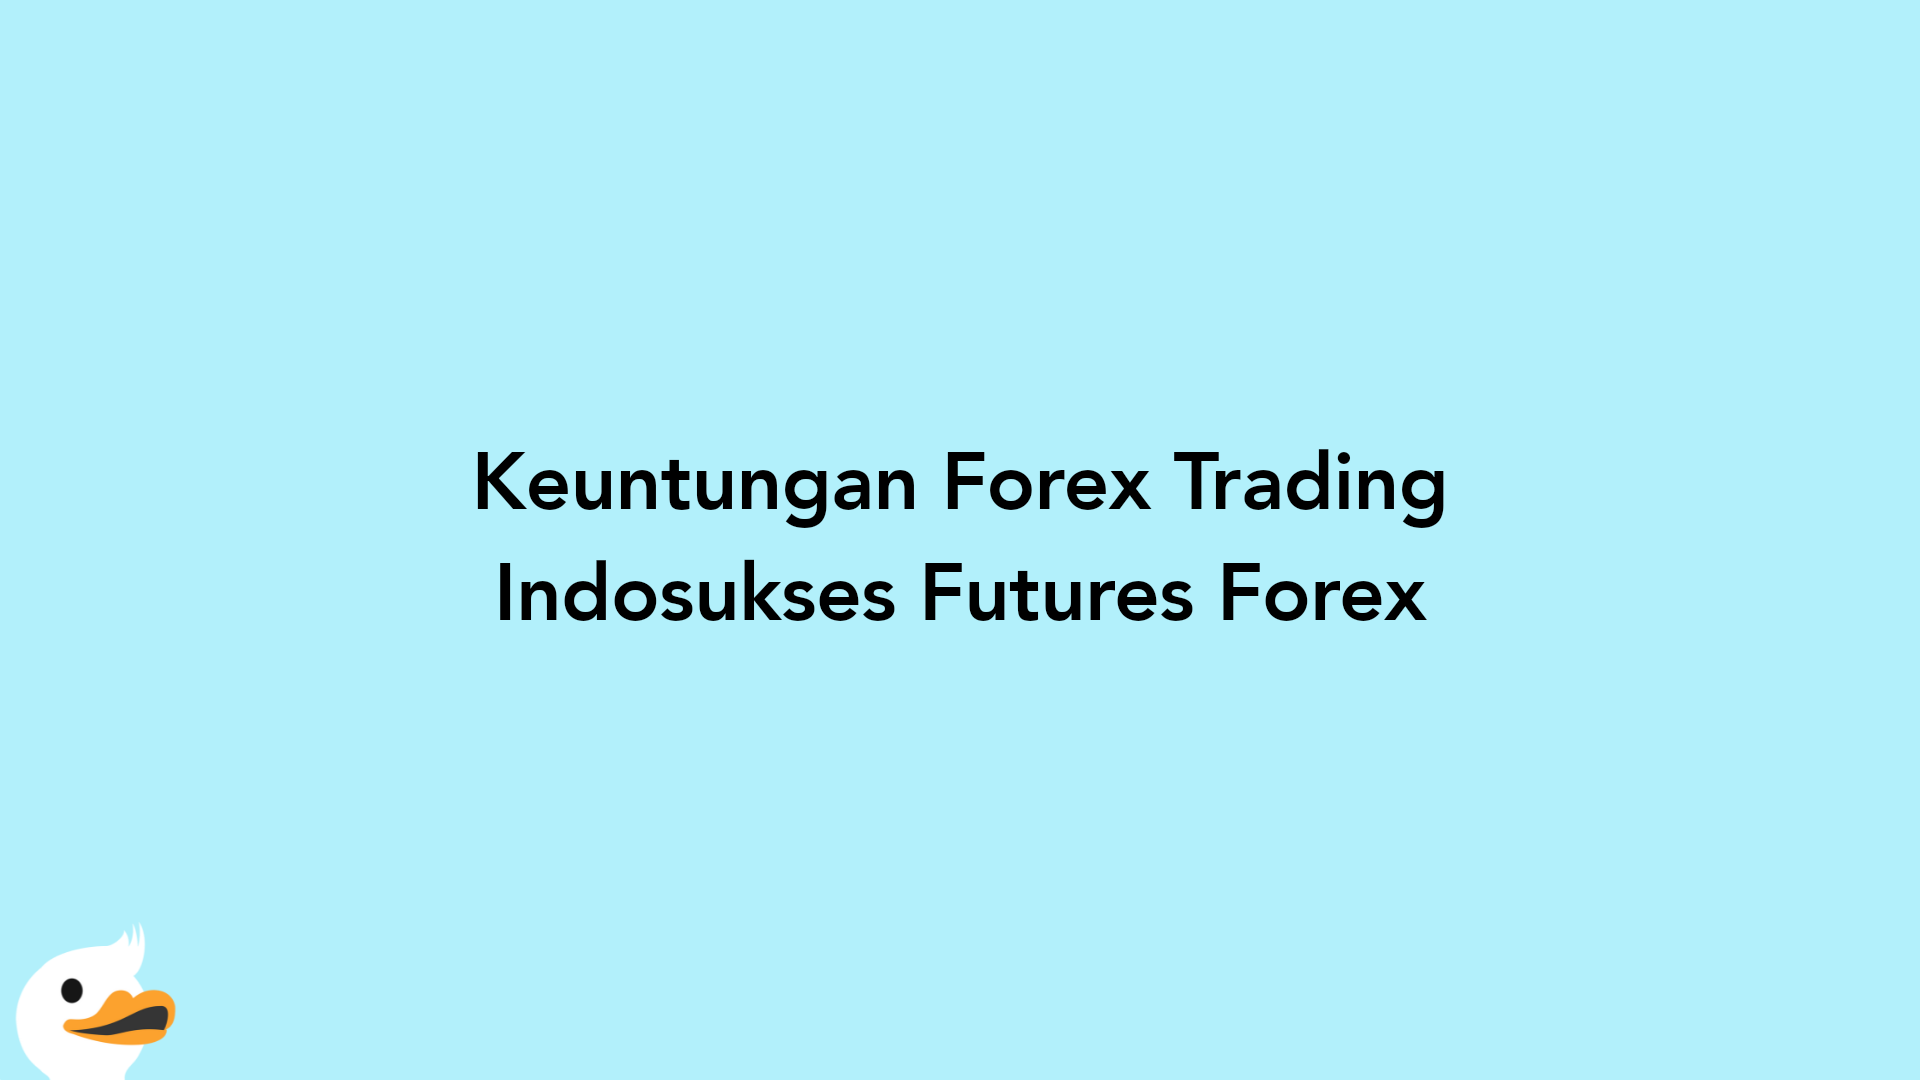 Keuntungan Forex Trading Indosukses Futures Forex